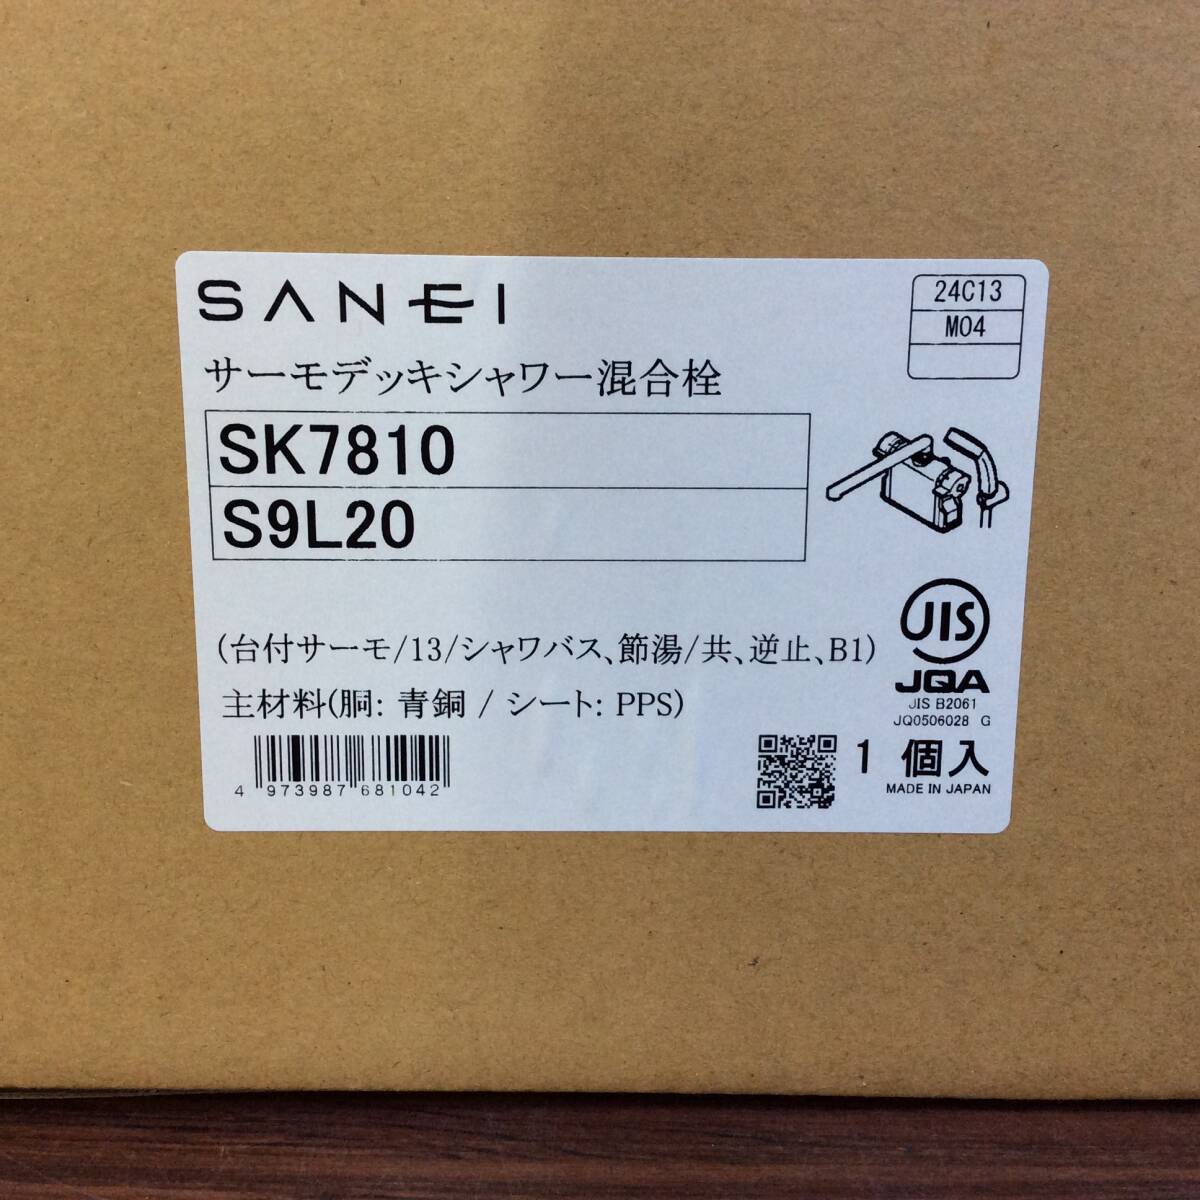 【TH-1952】未使用 SANEI サンエイ サーモデッキシャワー混合栓 SK7810 S9L20 1個入 (台付きサーモ/13/シャワバス、節湯/共、逆止、BI) の画像4